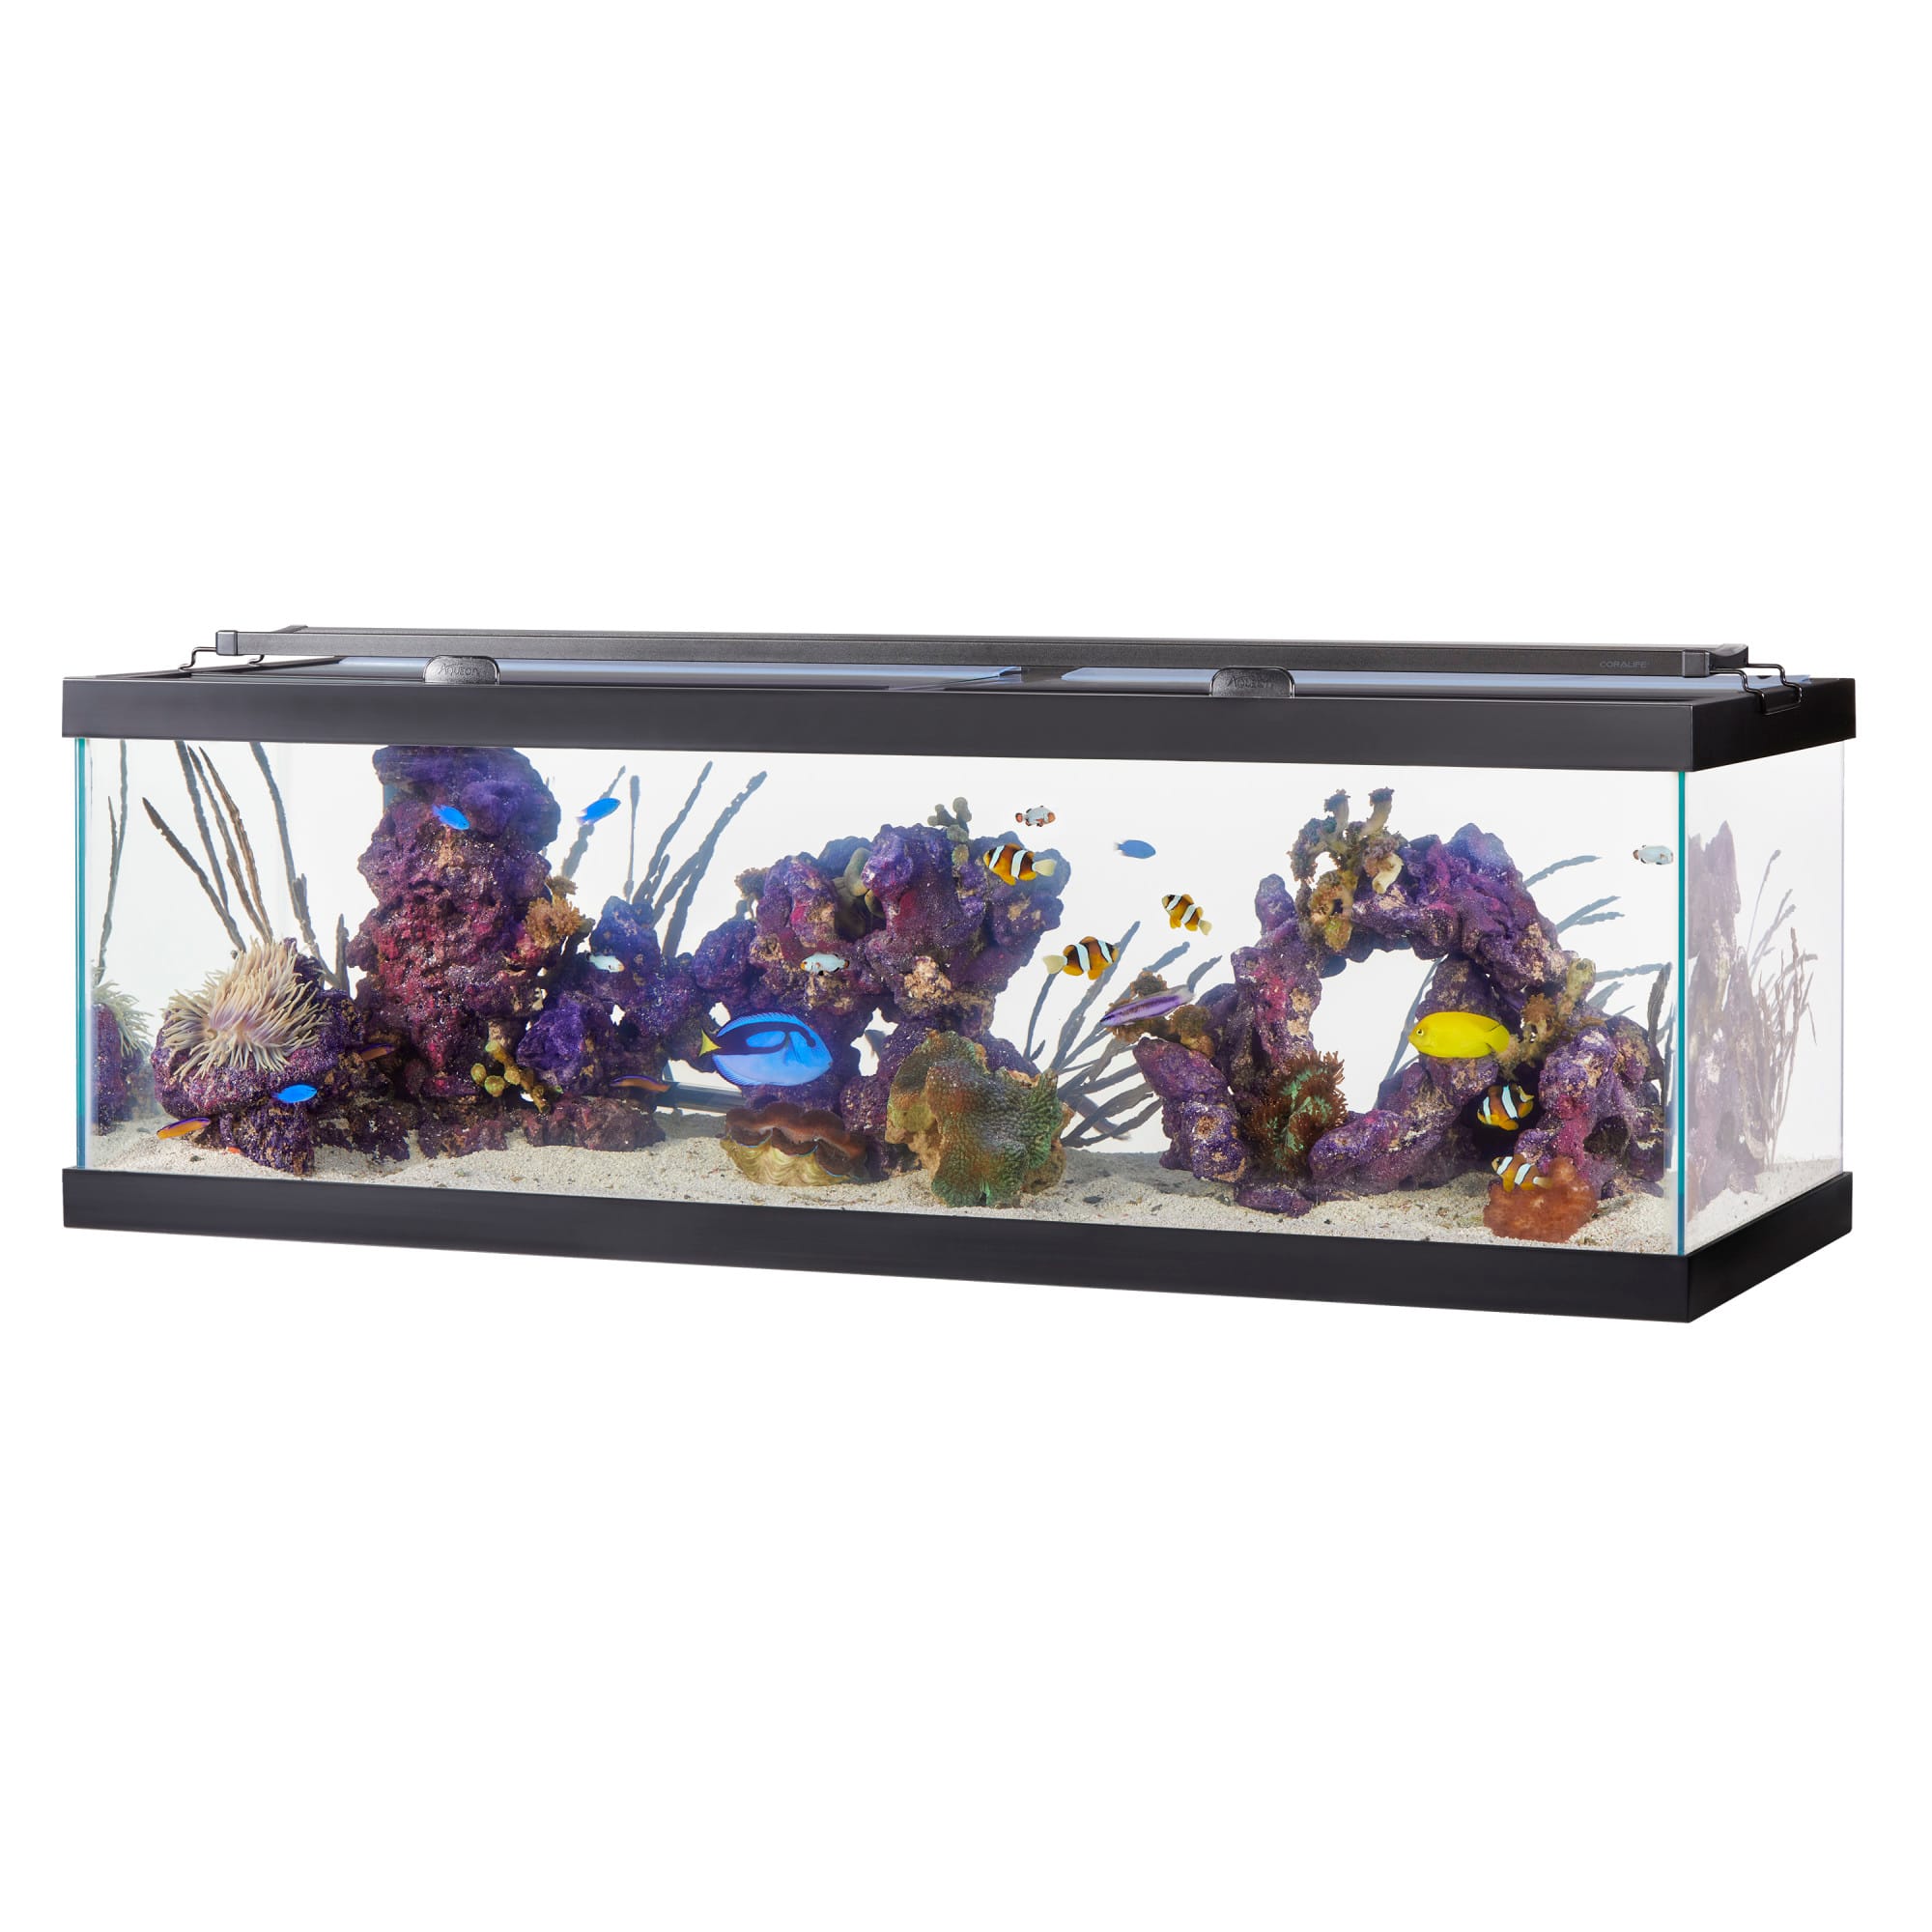 Aqueon - 60 gallon breeder aquarium 48.5x18.5x16